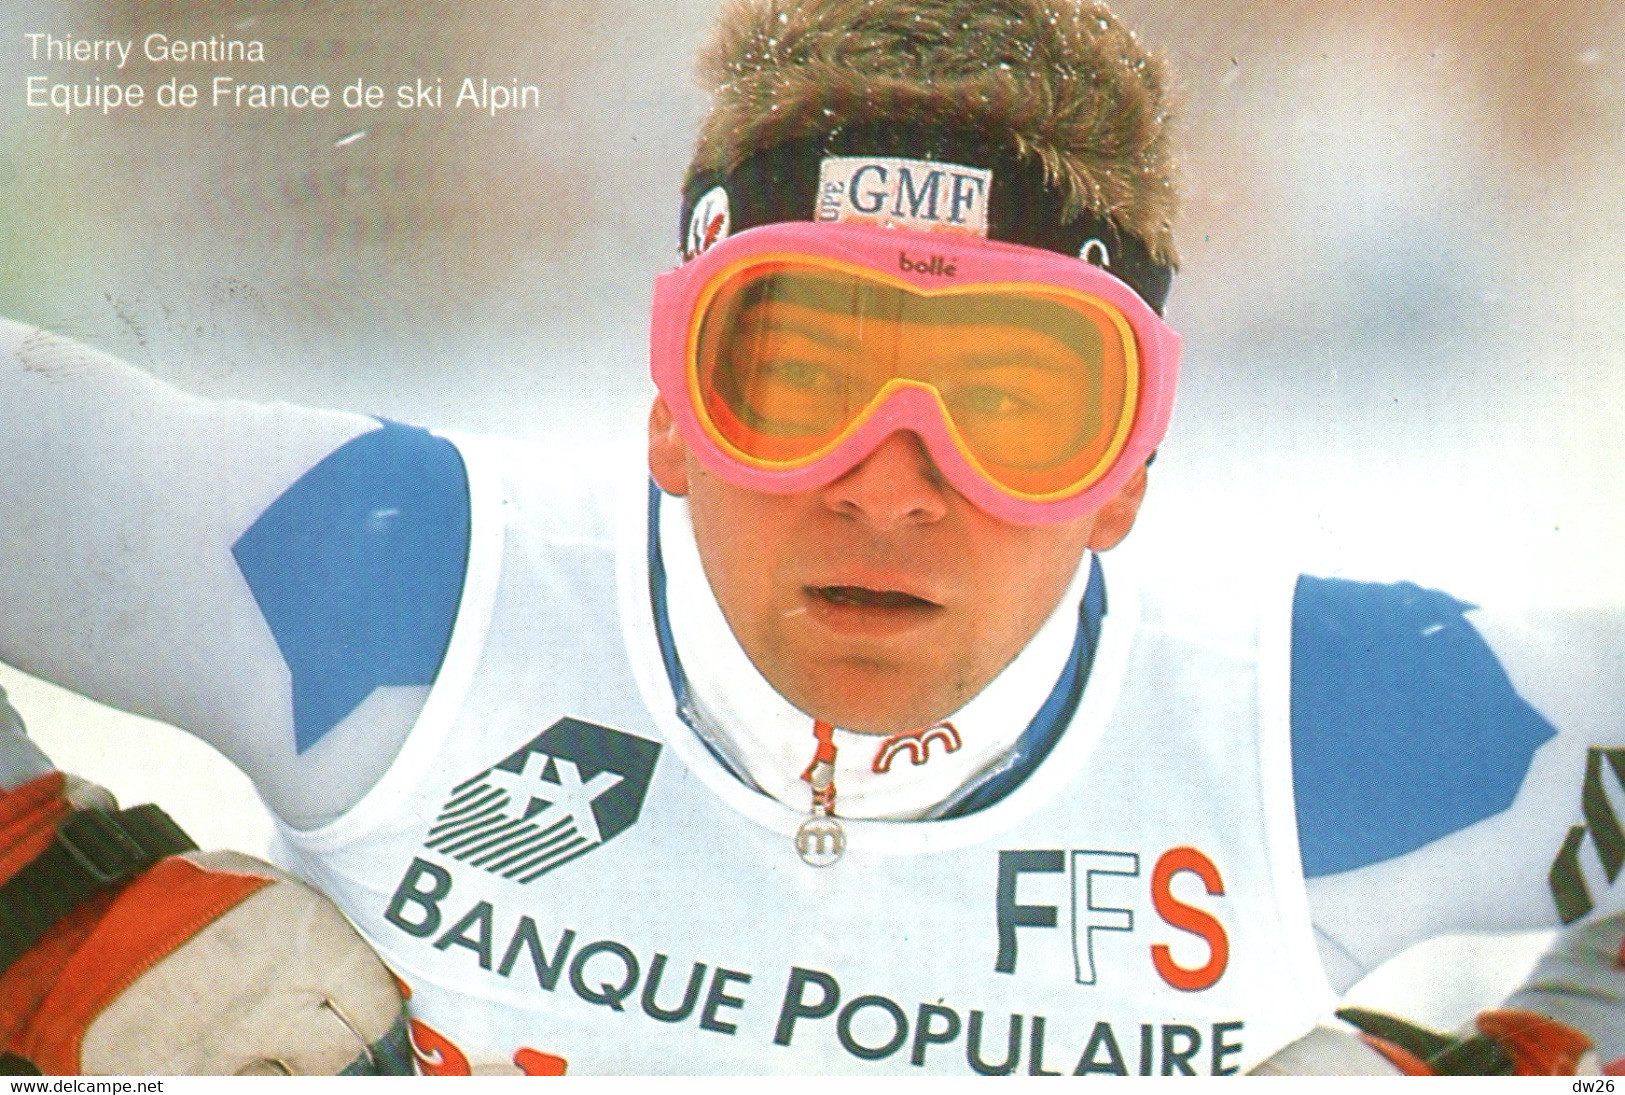 Thierry Gentina - Equipe De France De Ski Alpin (Descente) - Publicité Banque Populaire 1992 - Oosterse Gevechtssporten